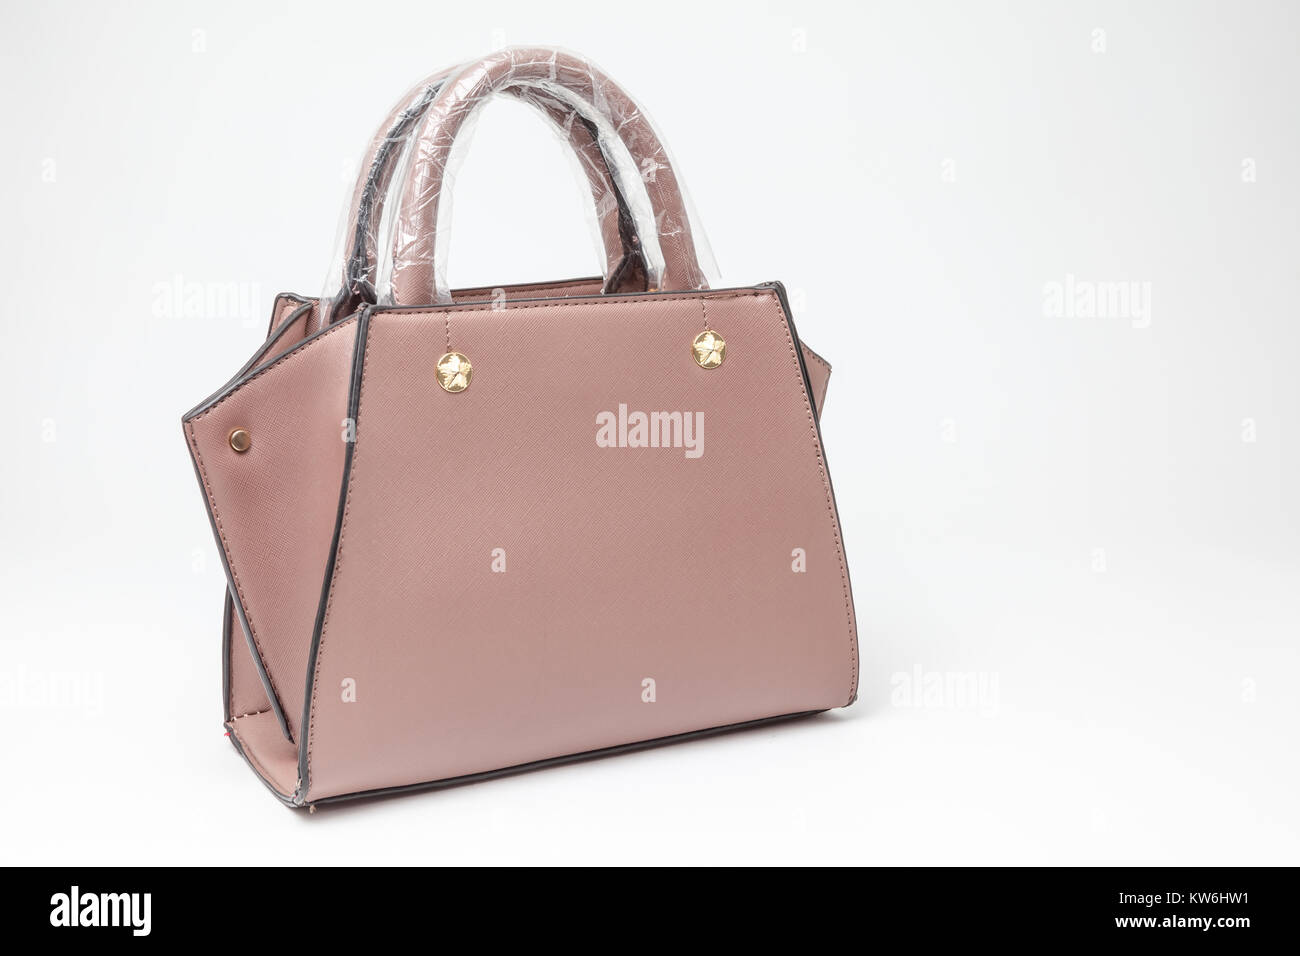 an handbag for all women or a purse fot all girls Stock Photo